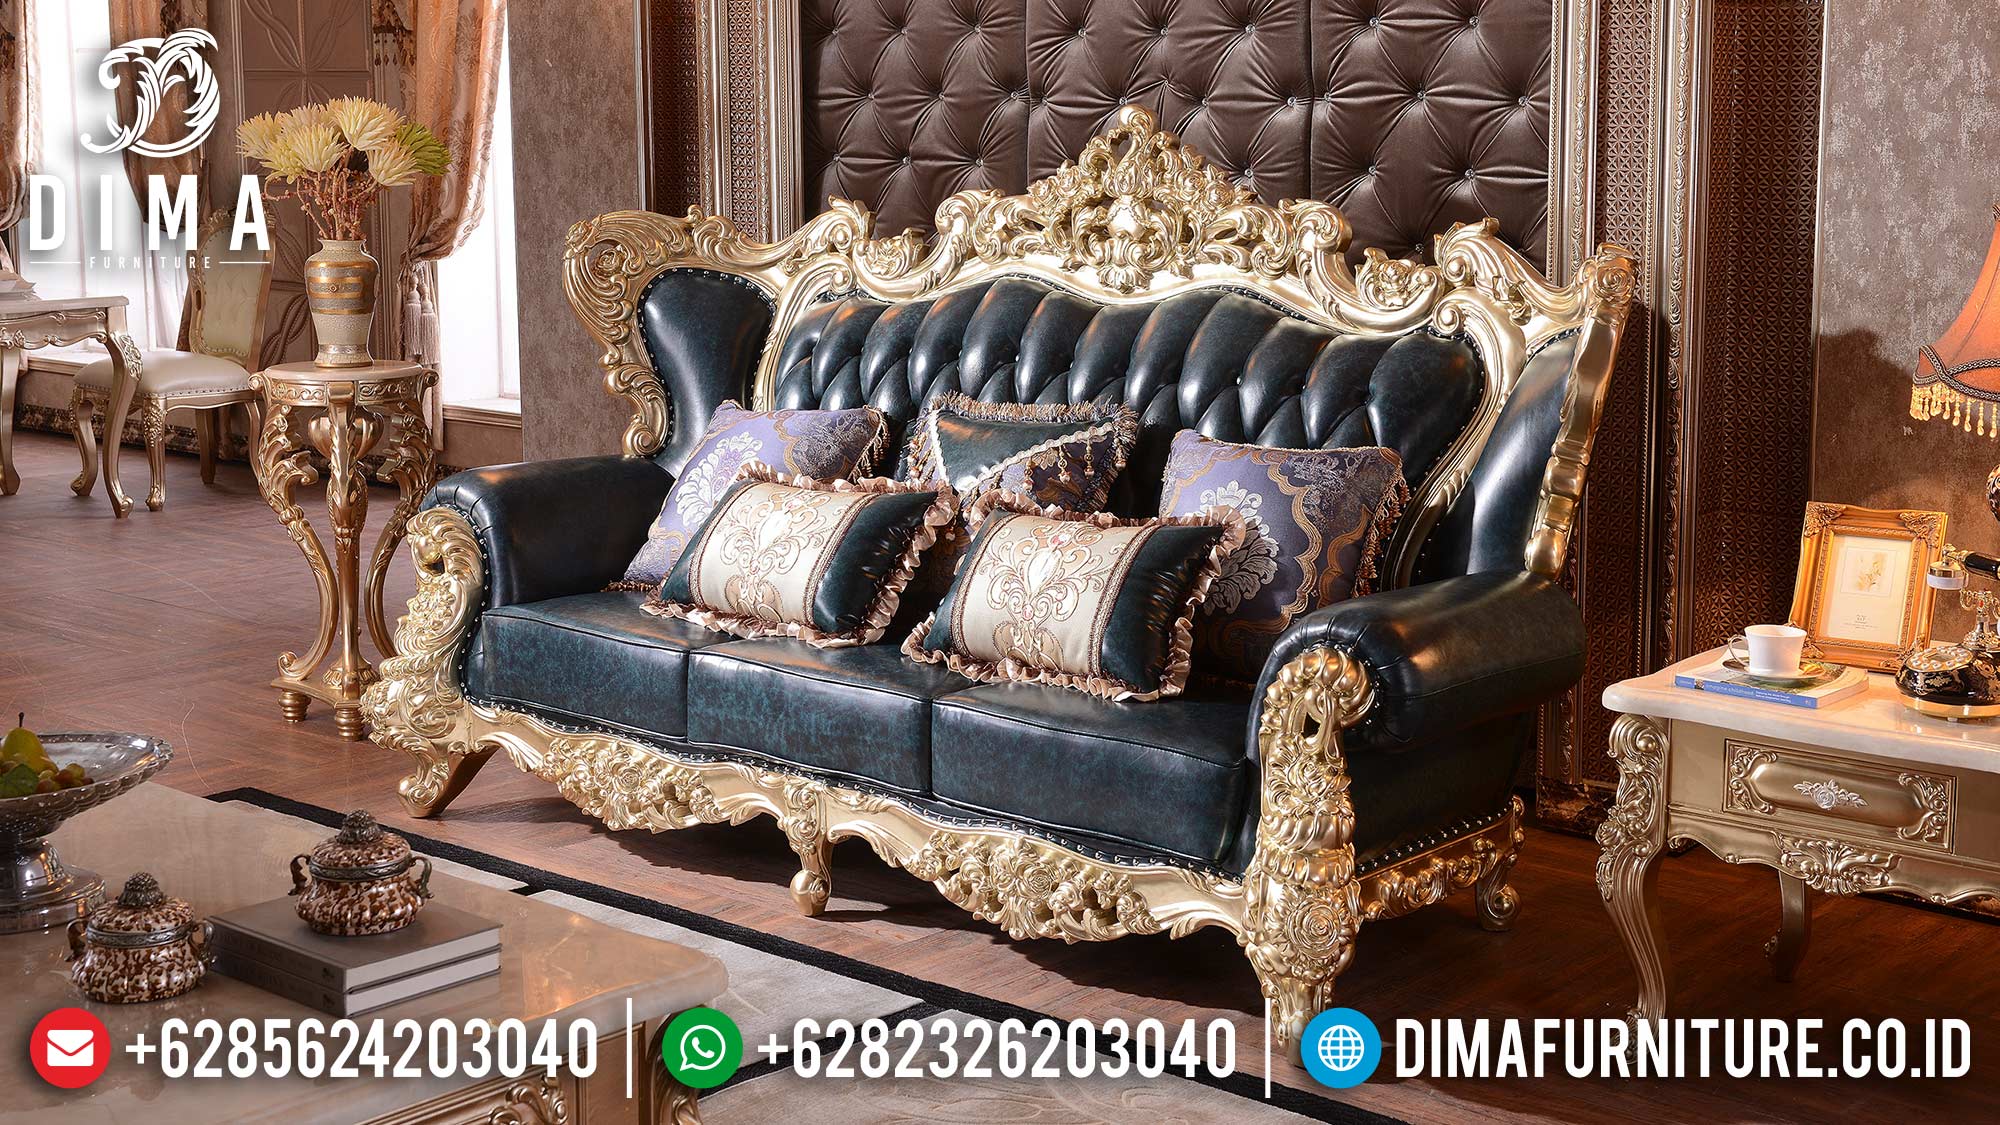 Italian Baroque Sofa Tamu Mewah 3 Seater Luxury Carving Elegant Color Furniture Jepara ST-1370